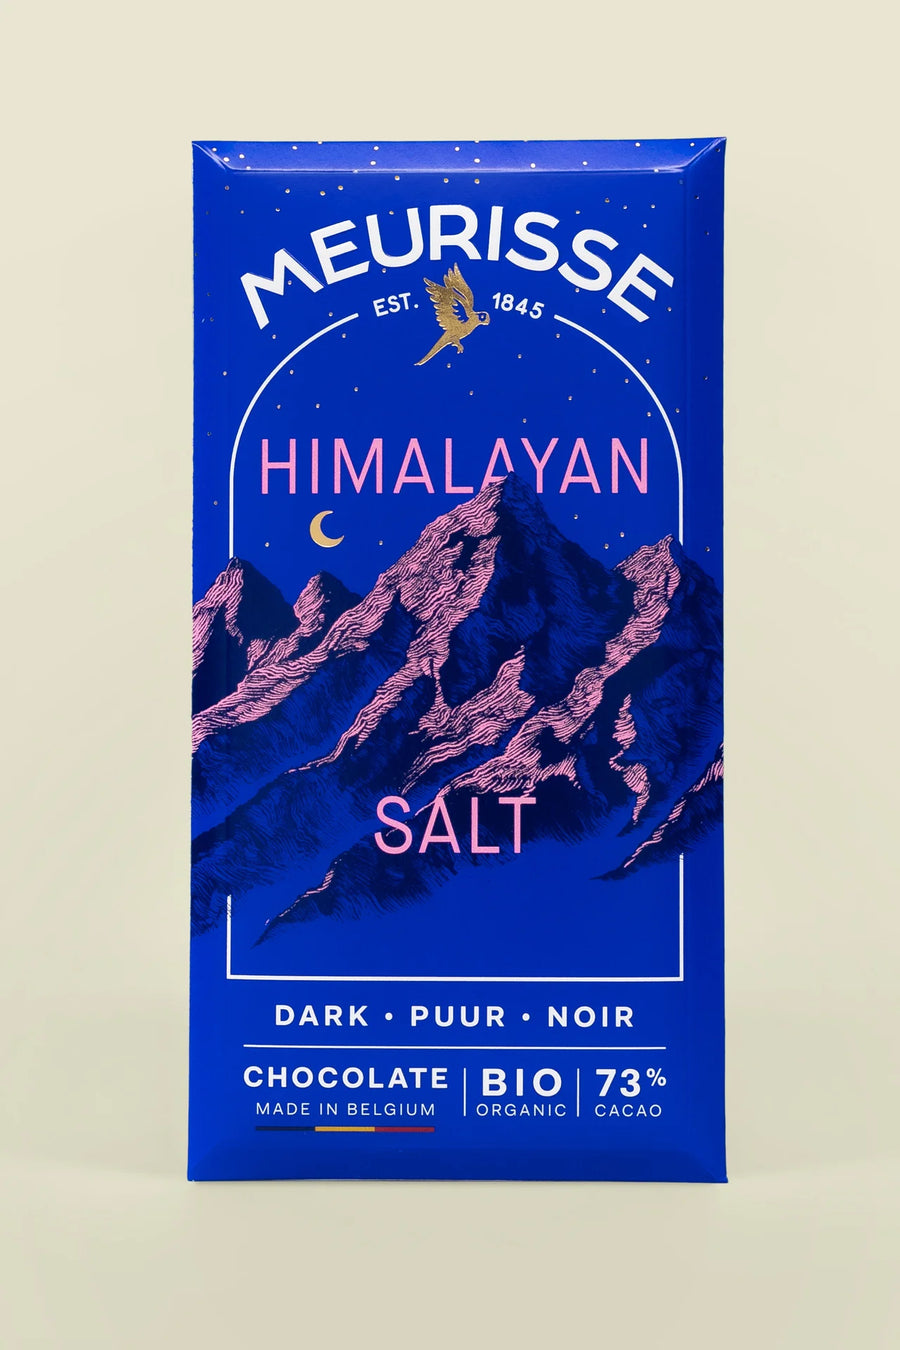 Image of Meurisse 73% Dark Chocolate with Himalayan Salt